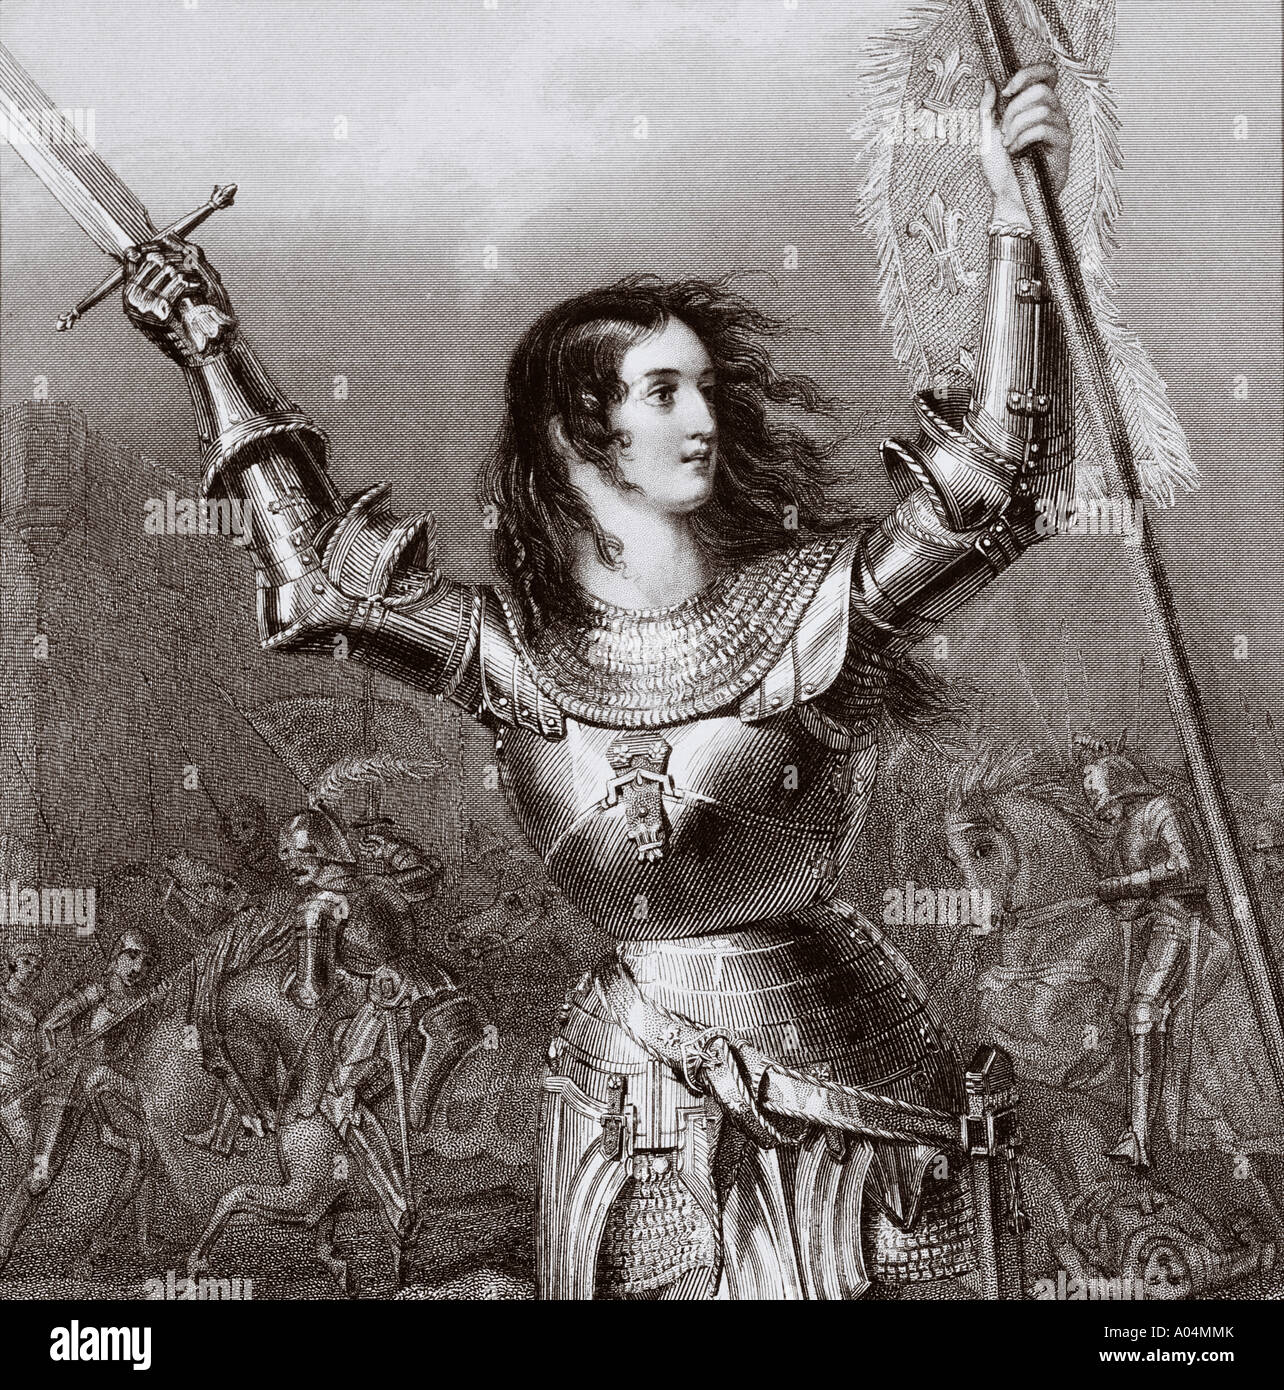 Joan of Arc 1412 - 1431, alias Jeanne d'Arc oder Jeanne la Pucelle.  Französische Heldin und Märtyrerin Stockfotografie - Alamy